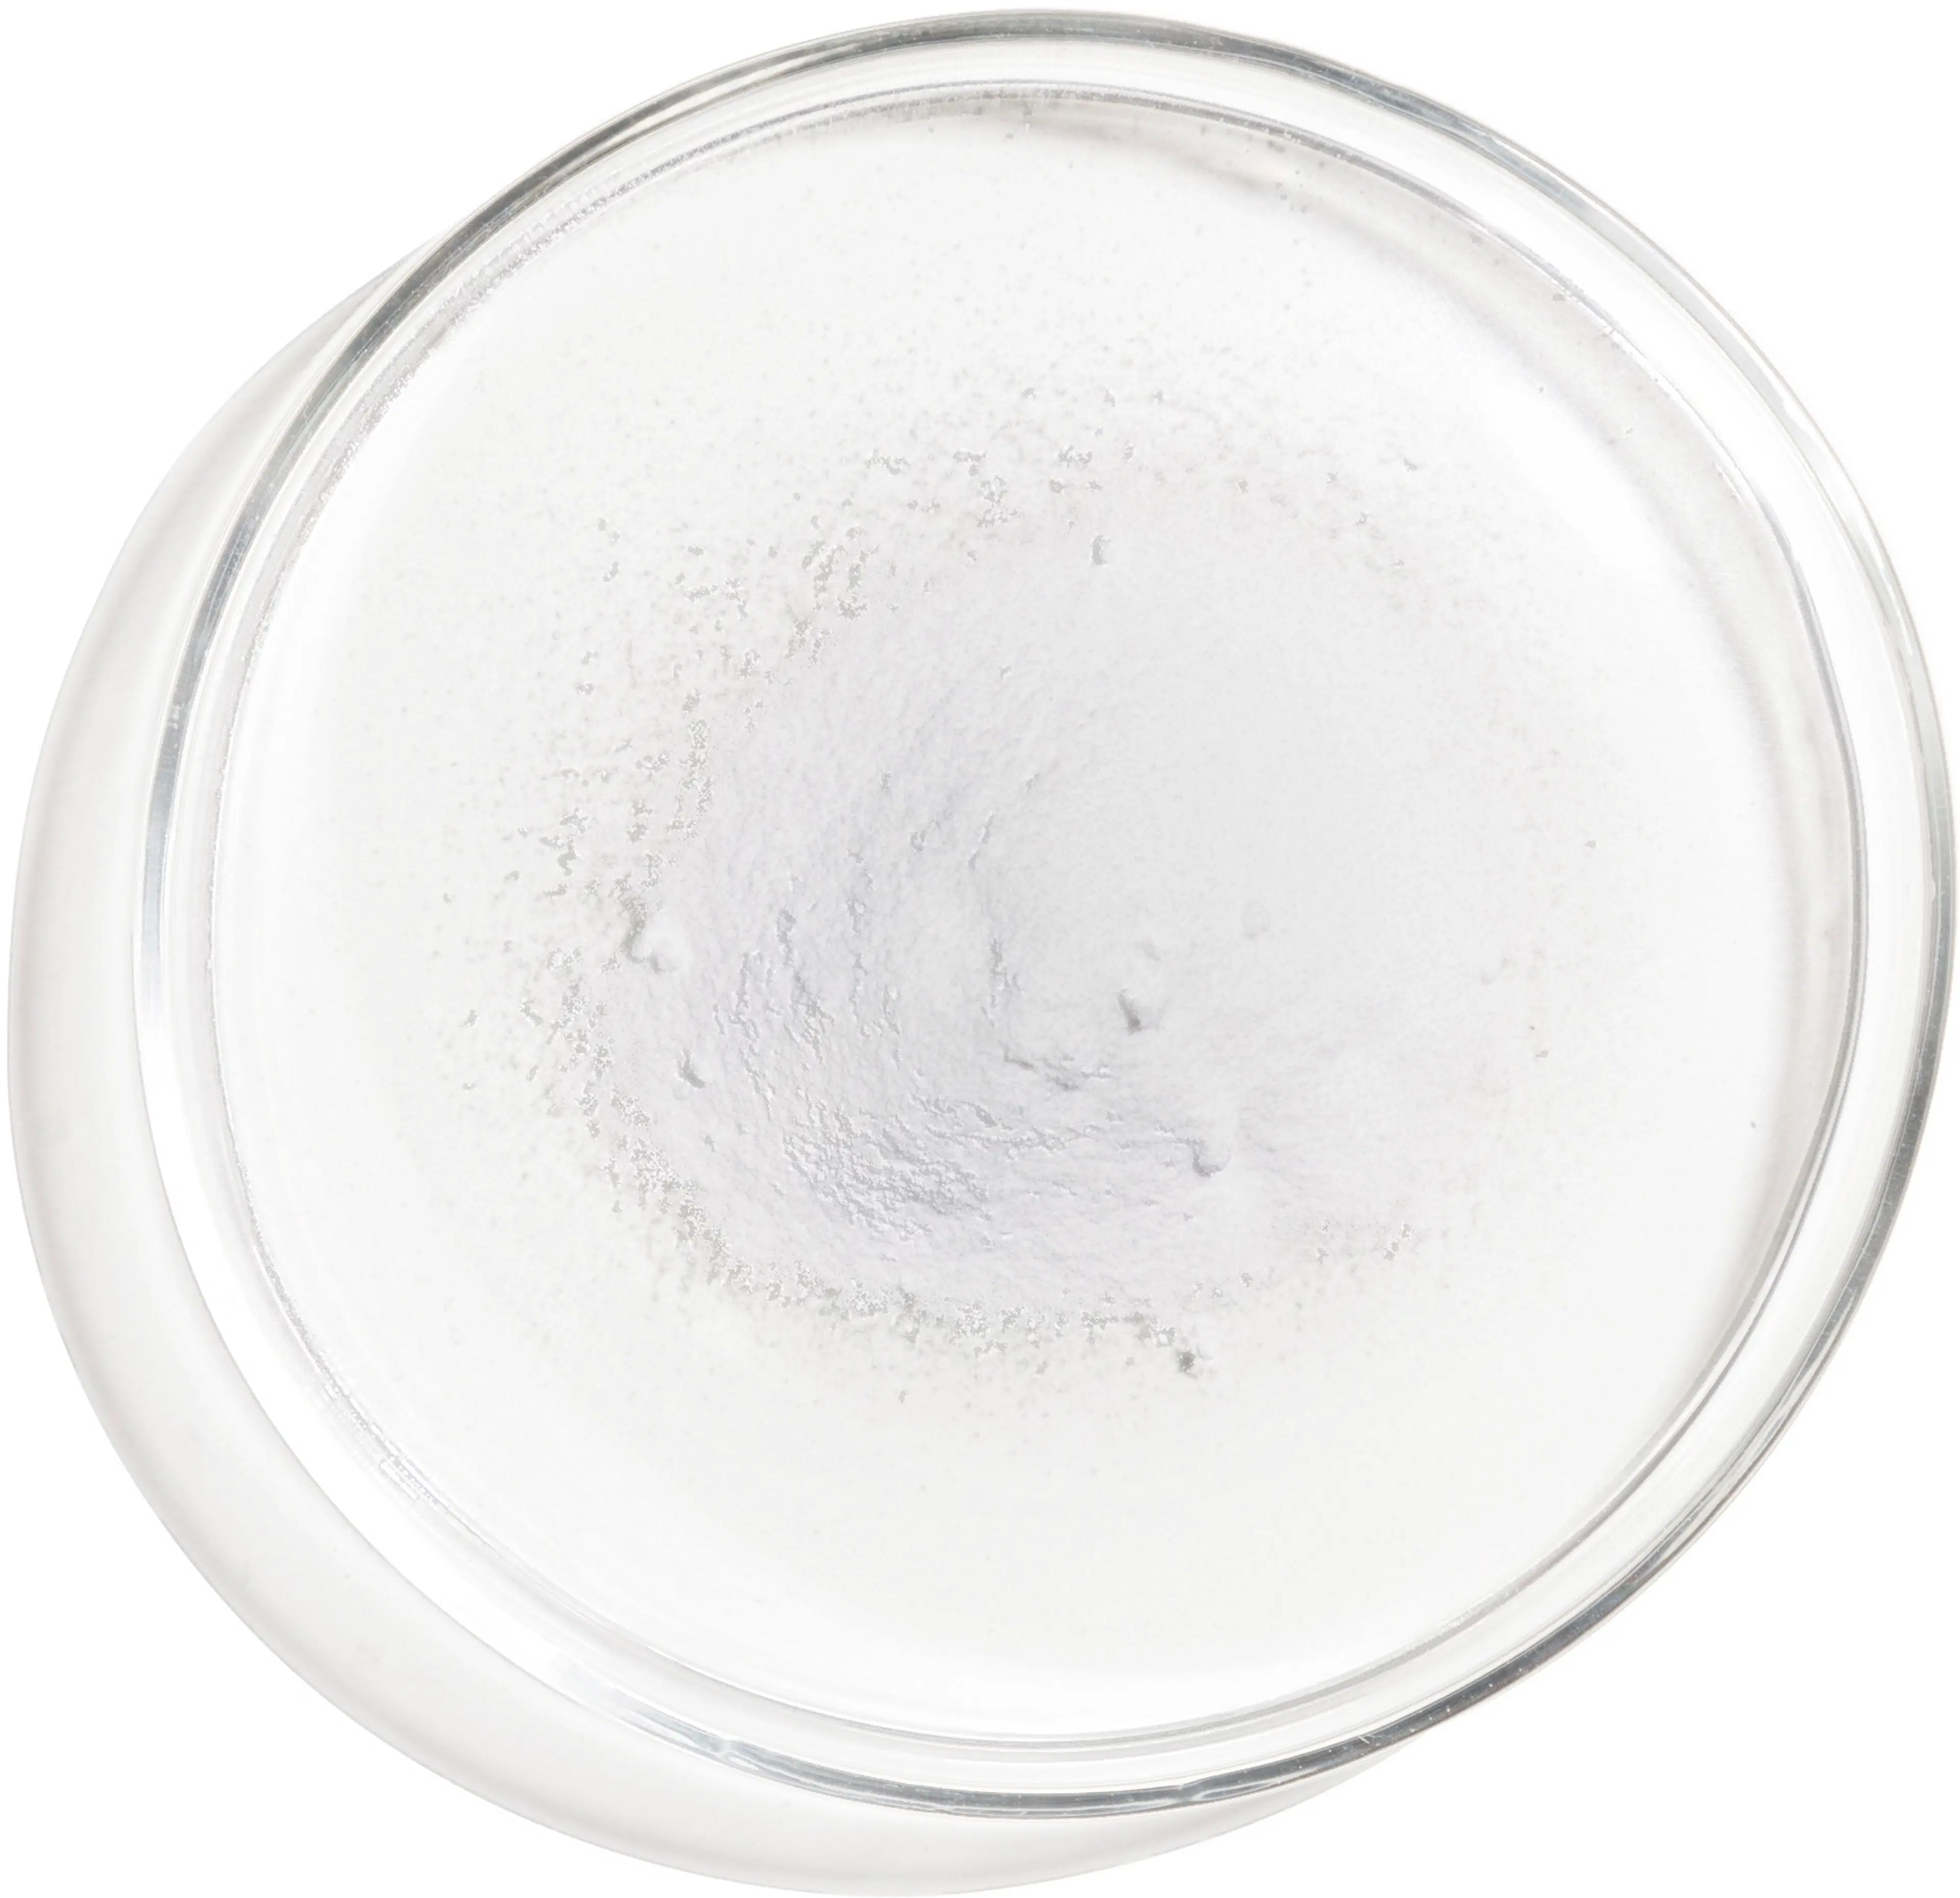 The Ordinary 100% Niacinamide Powder niasiiniamidipuuteri 20 g